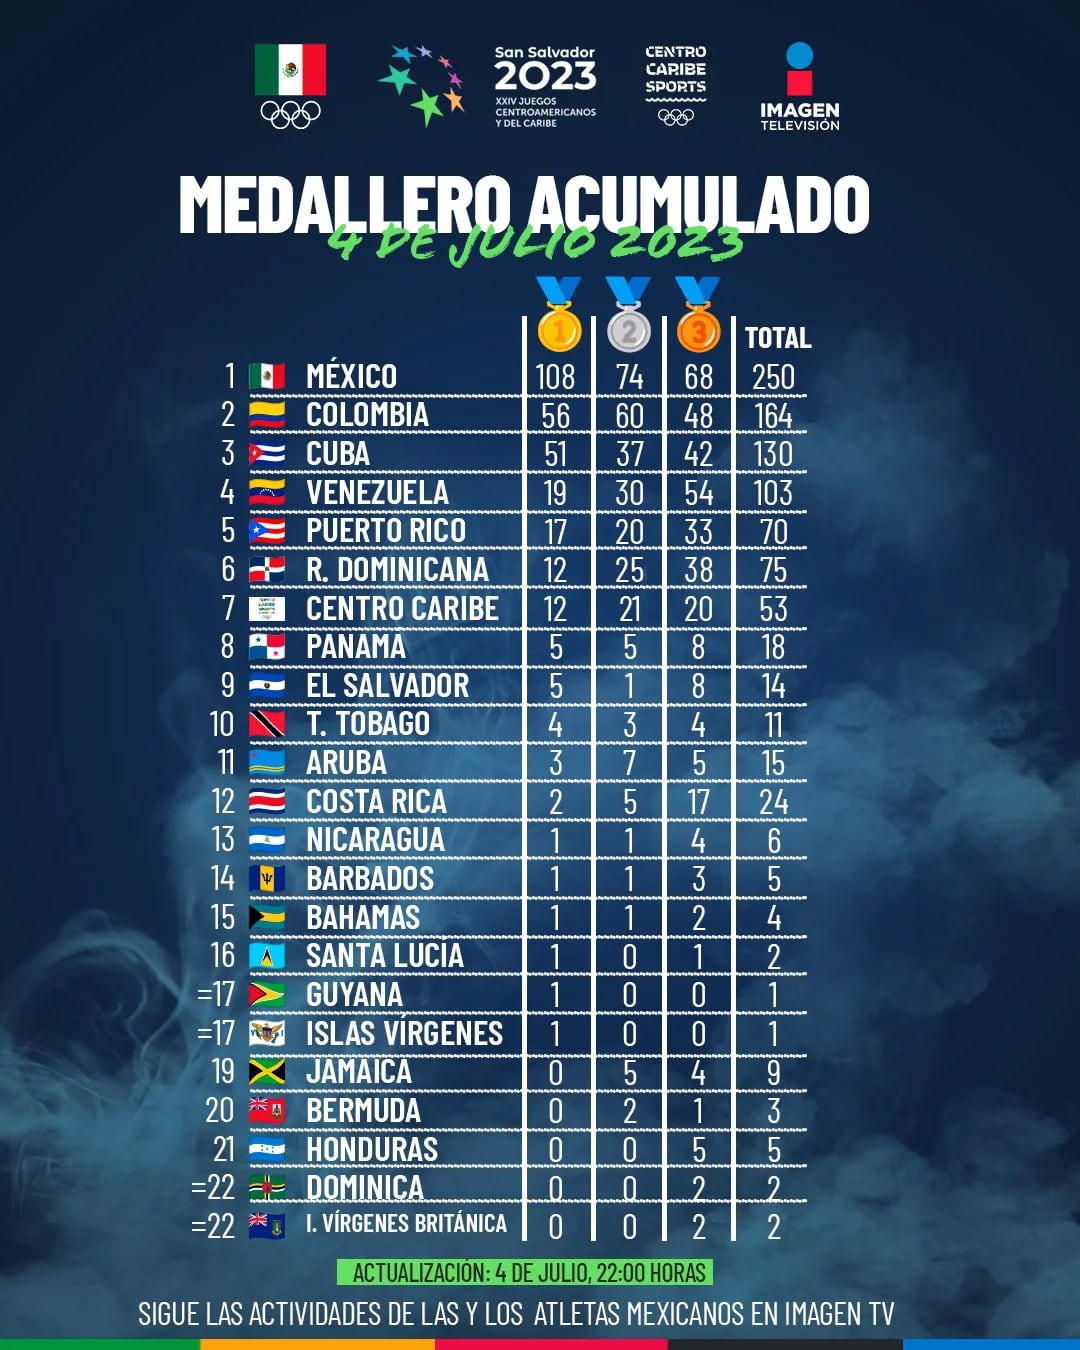 La Delegación Mexicana sigue dominando el medallero centroamericano.